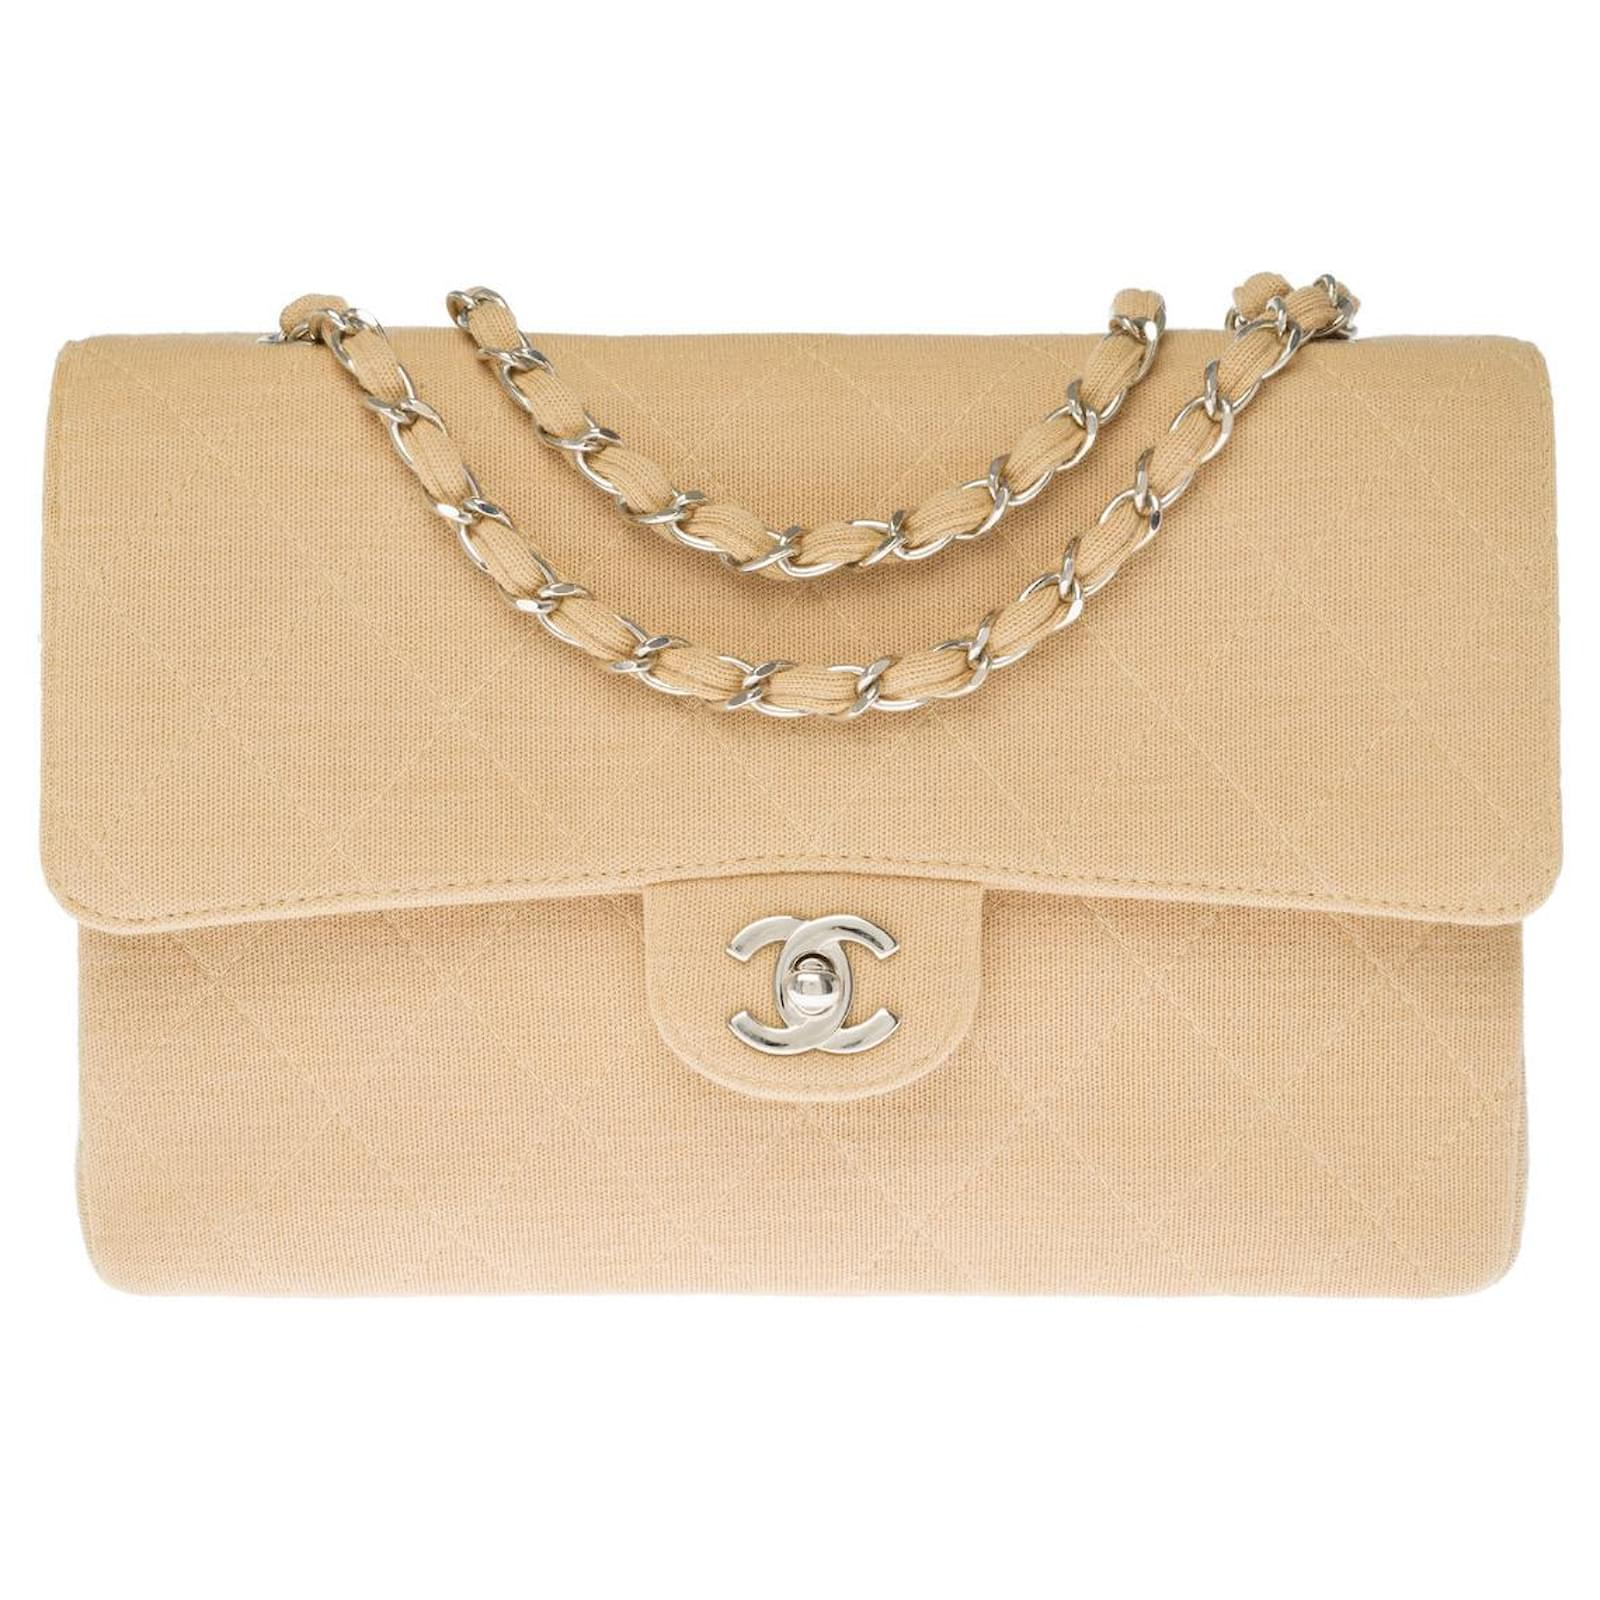 Handbags Chanel Timeless Shoulder Bag in Beige Jersey- 121252245